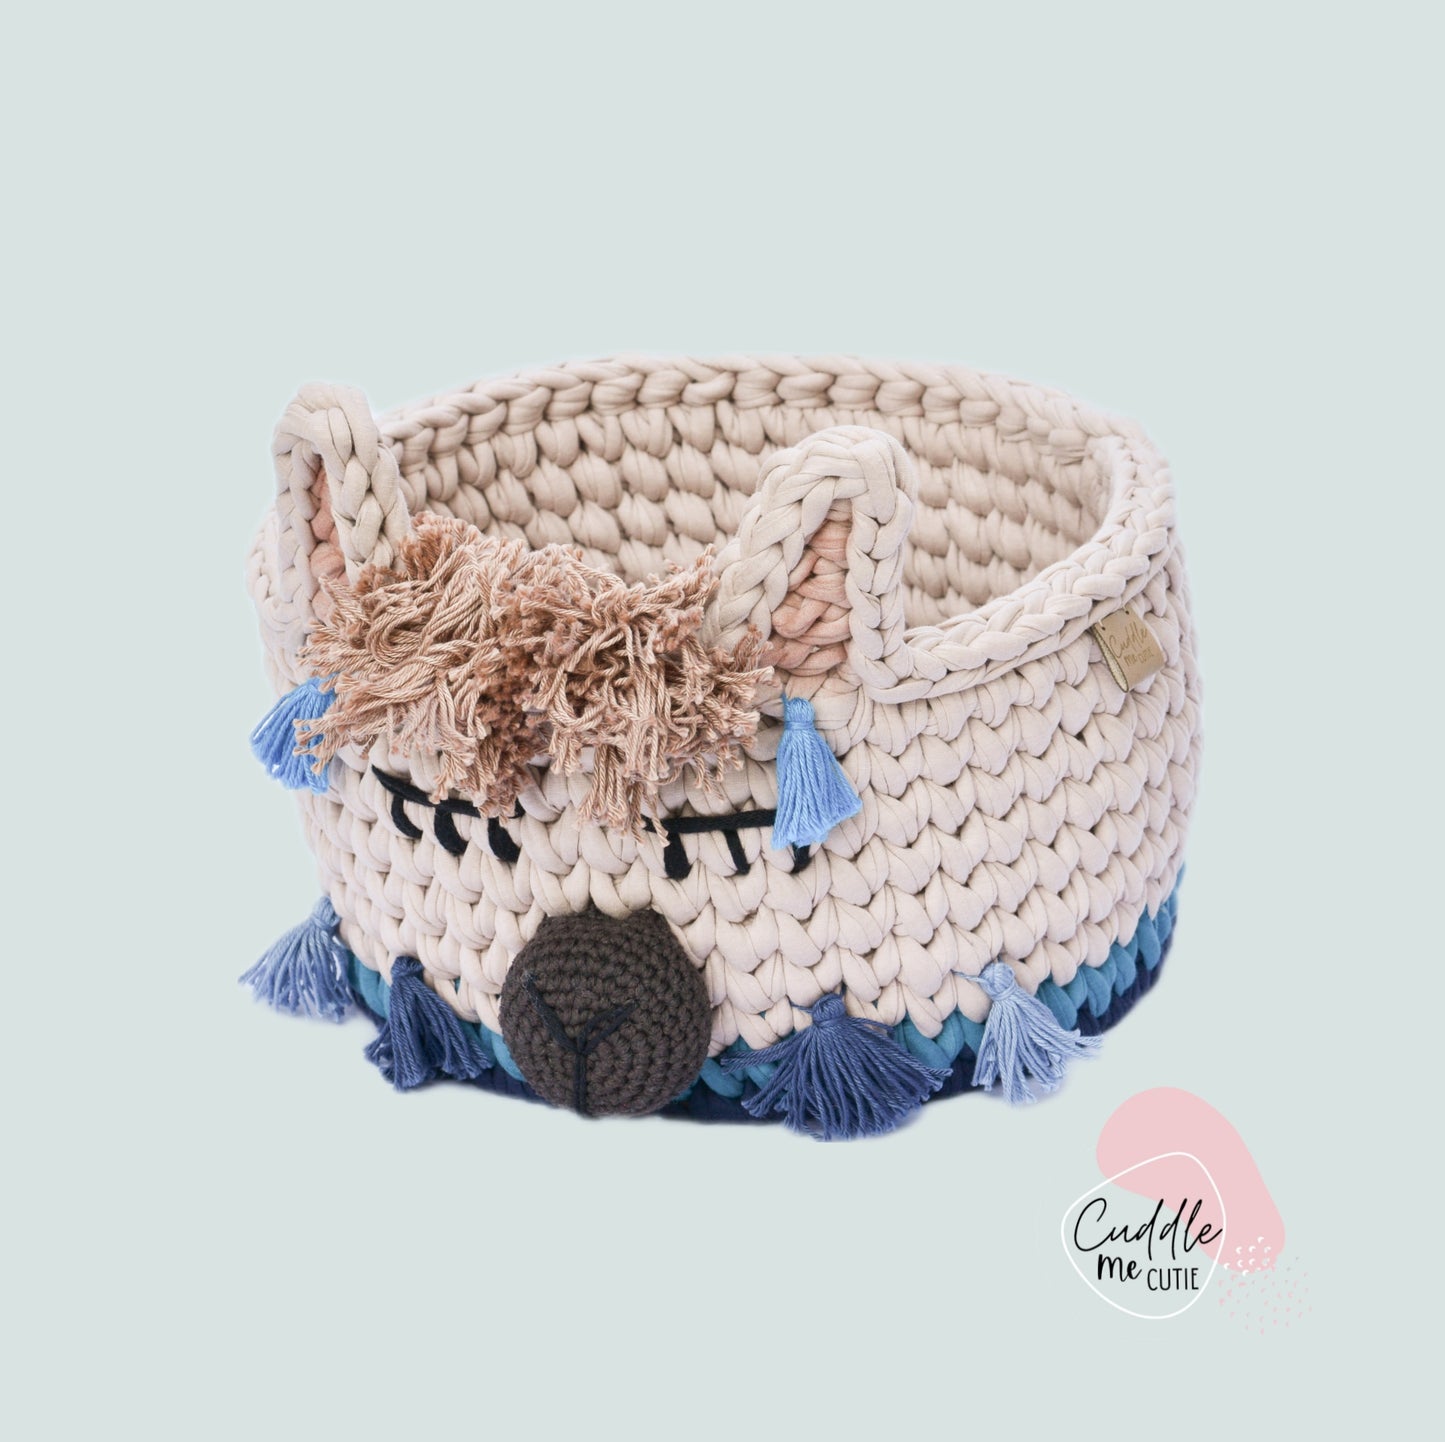 Crochet Boy Llama Basket